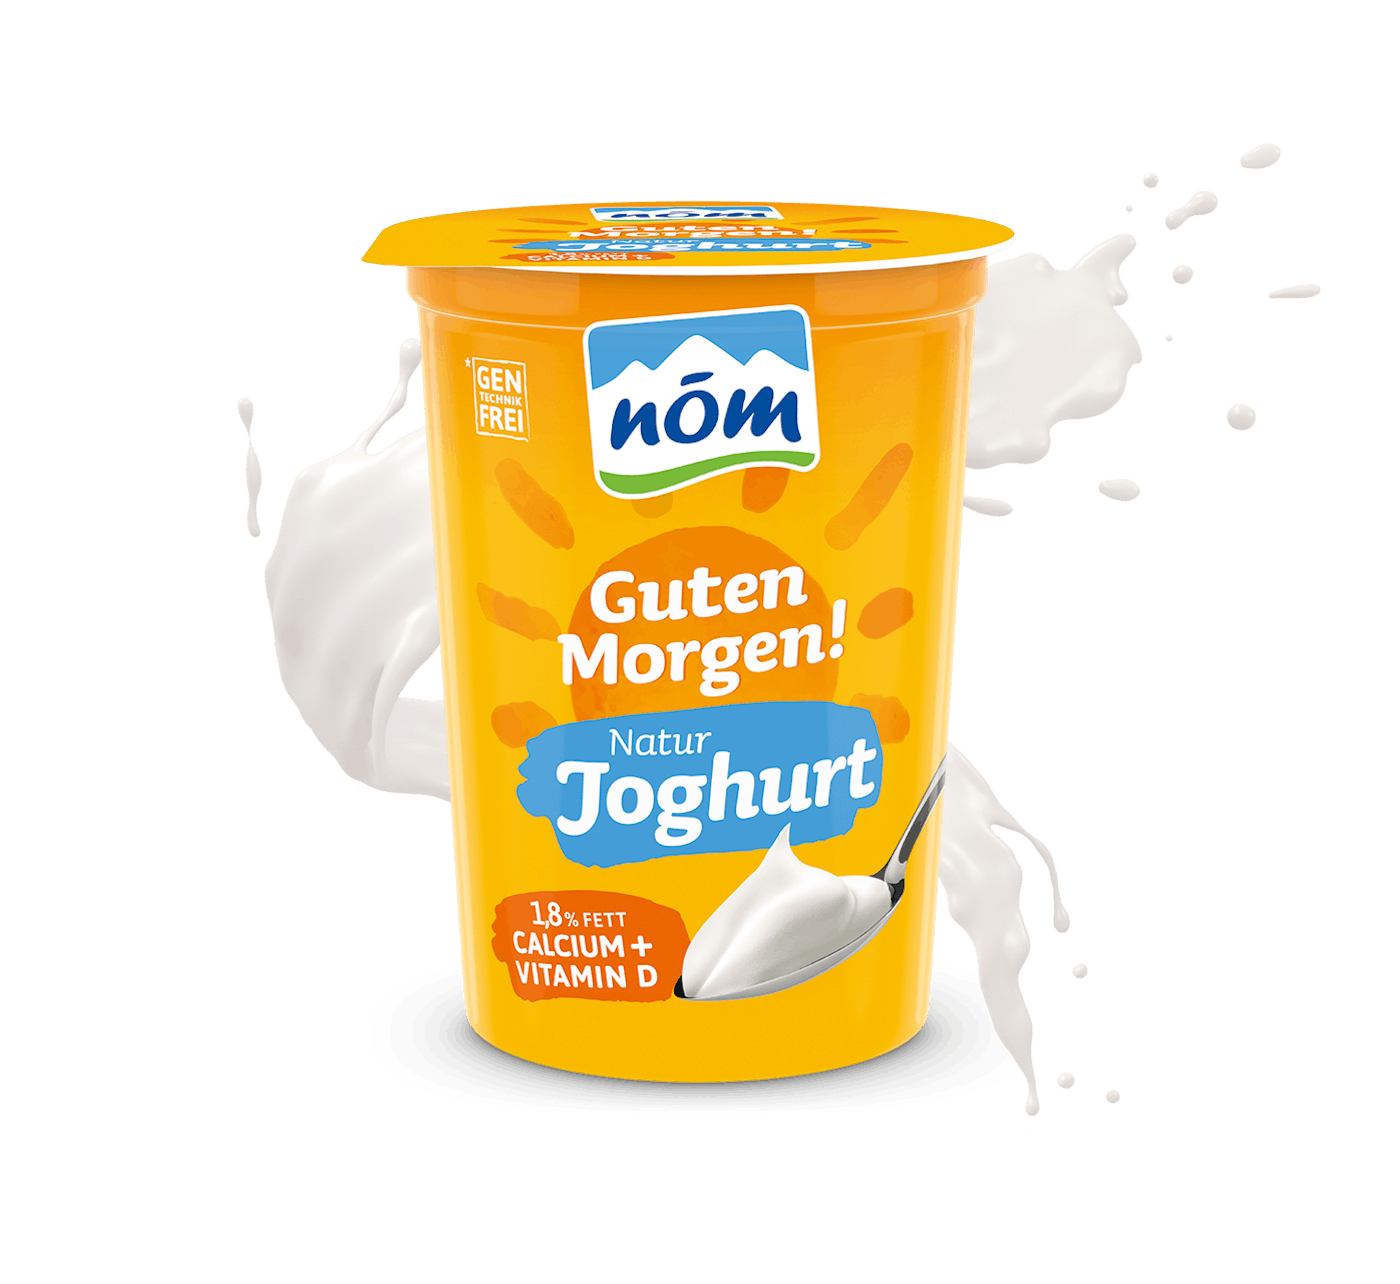 NÖM Guten Morgen Joghurt im 500 g Becher mit 1,8 % Fett mit Milchsplash